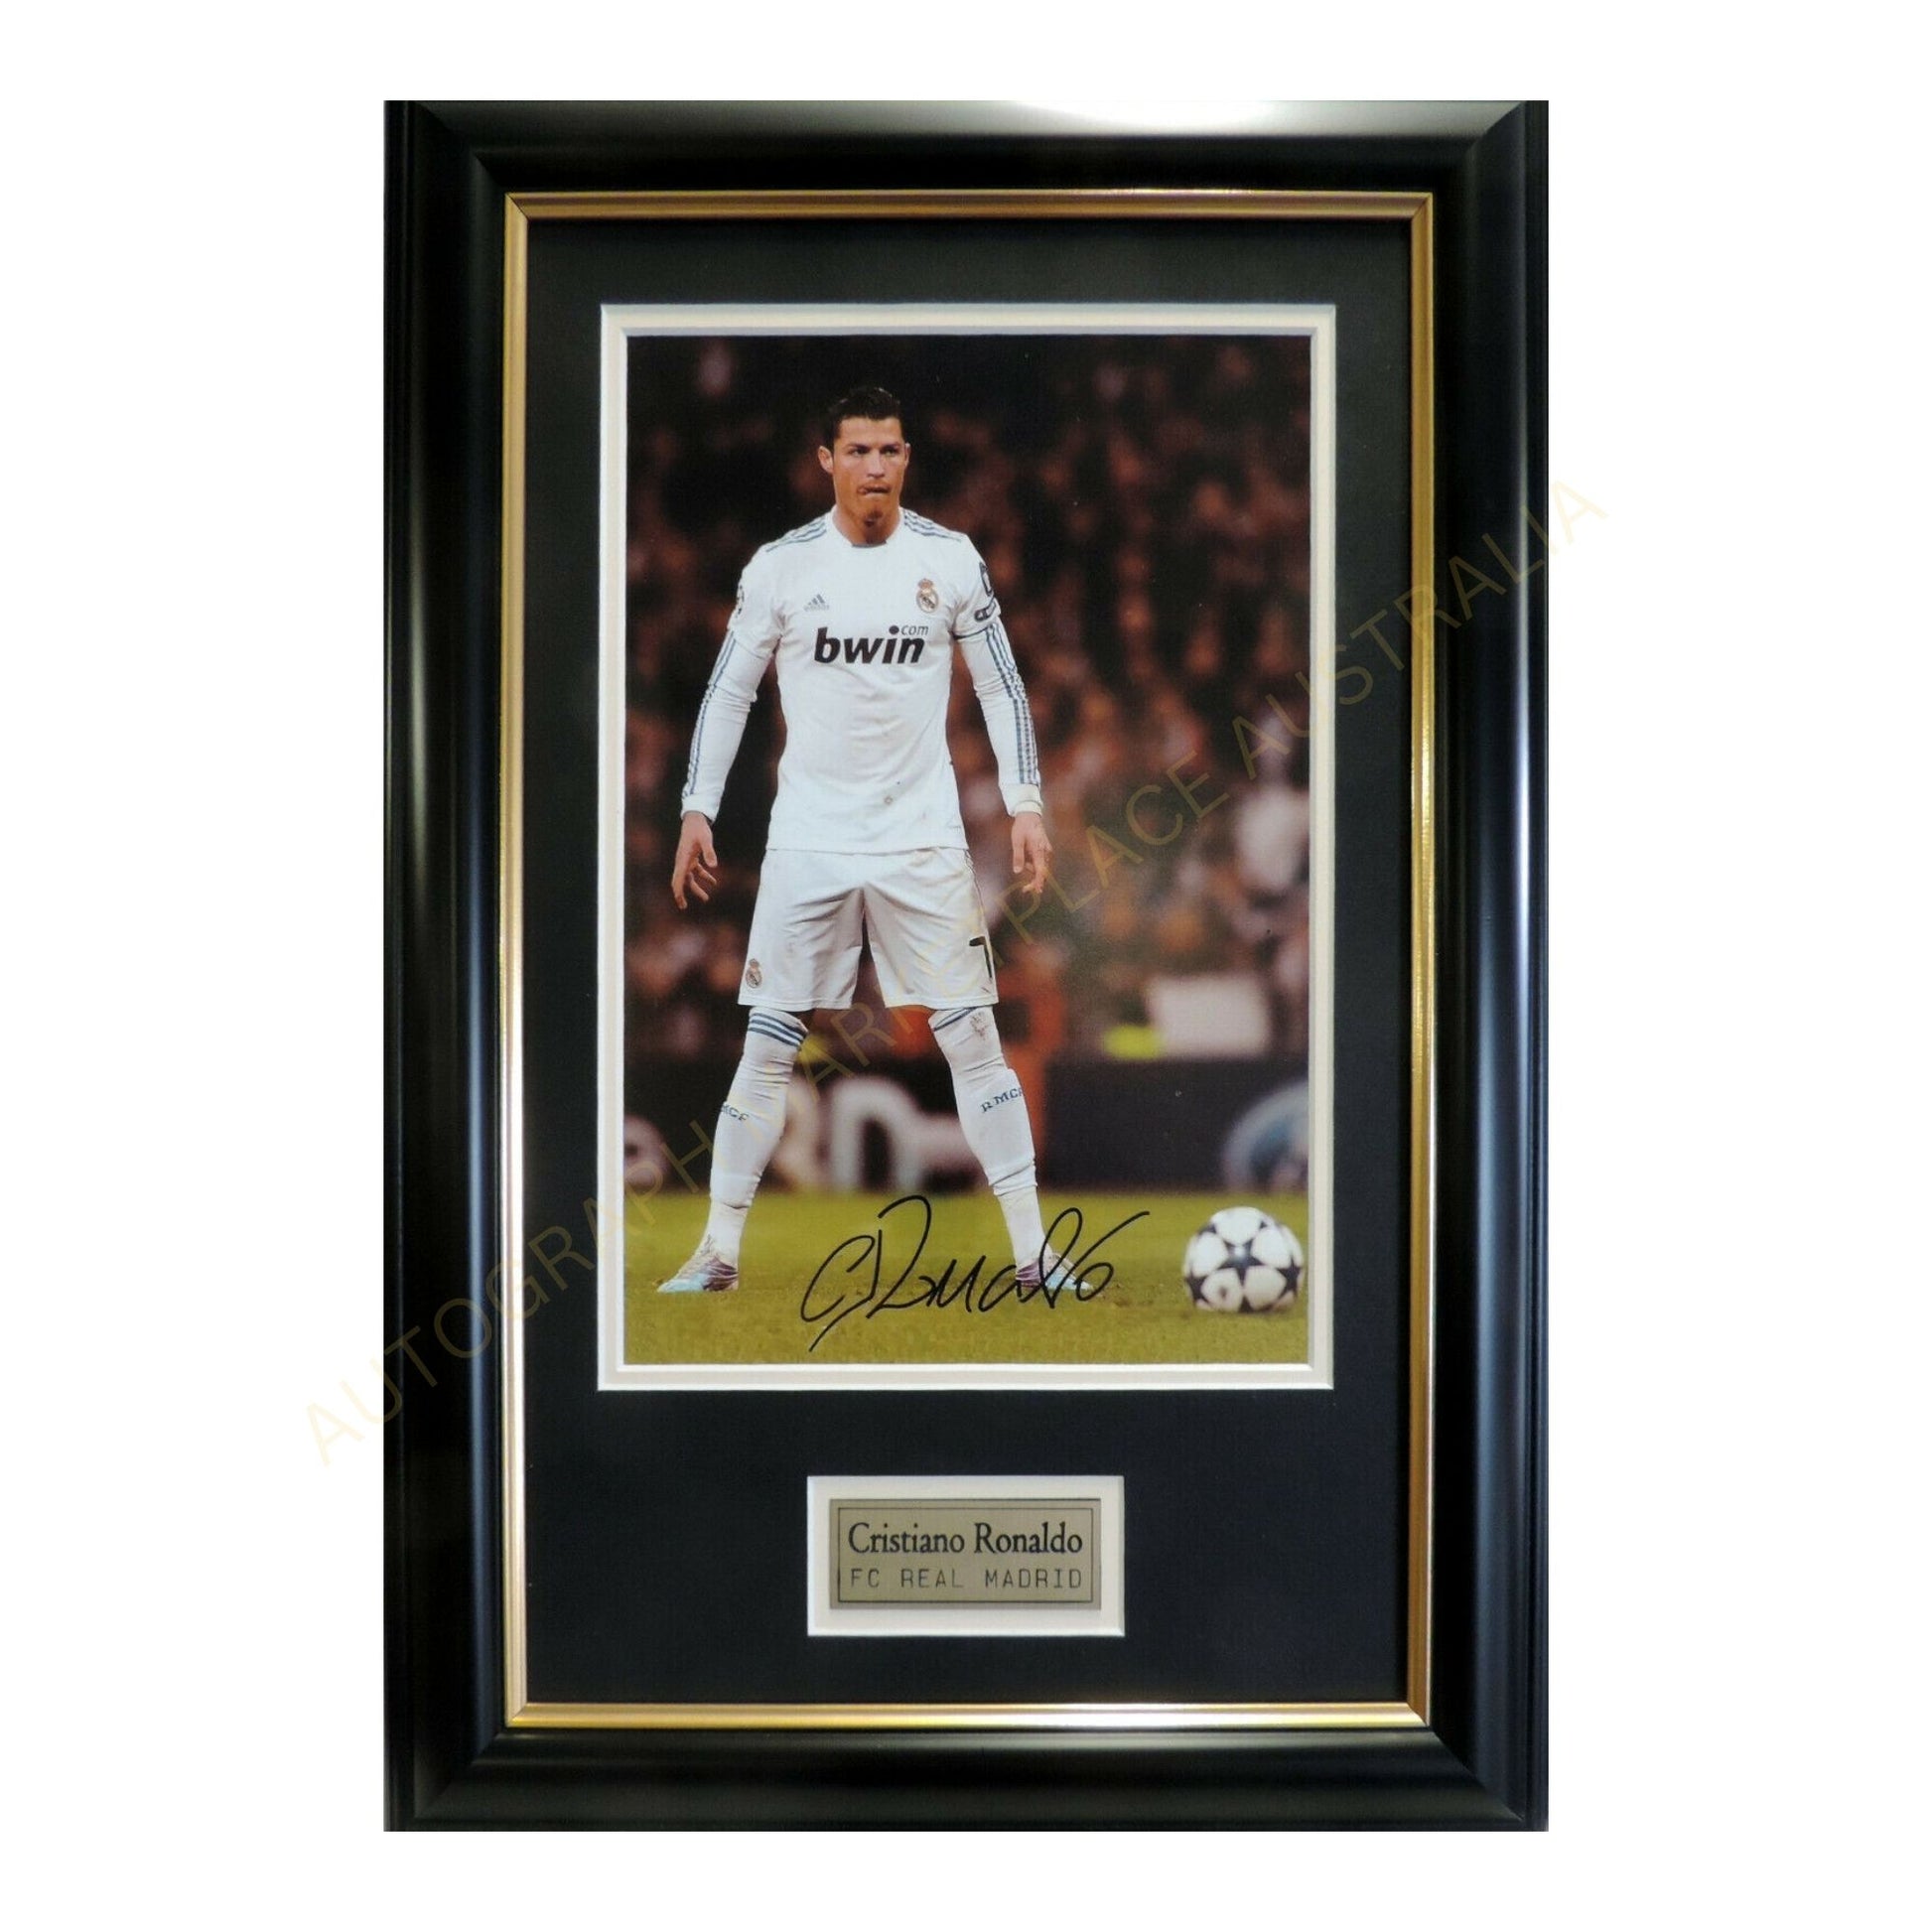 Cristiano Ronaldo CR7 Autographed Framed Soccer Memorabilia